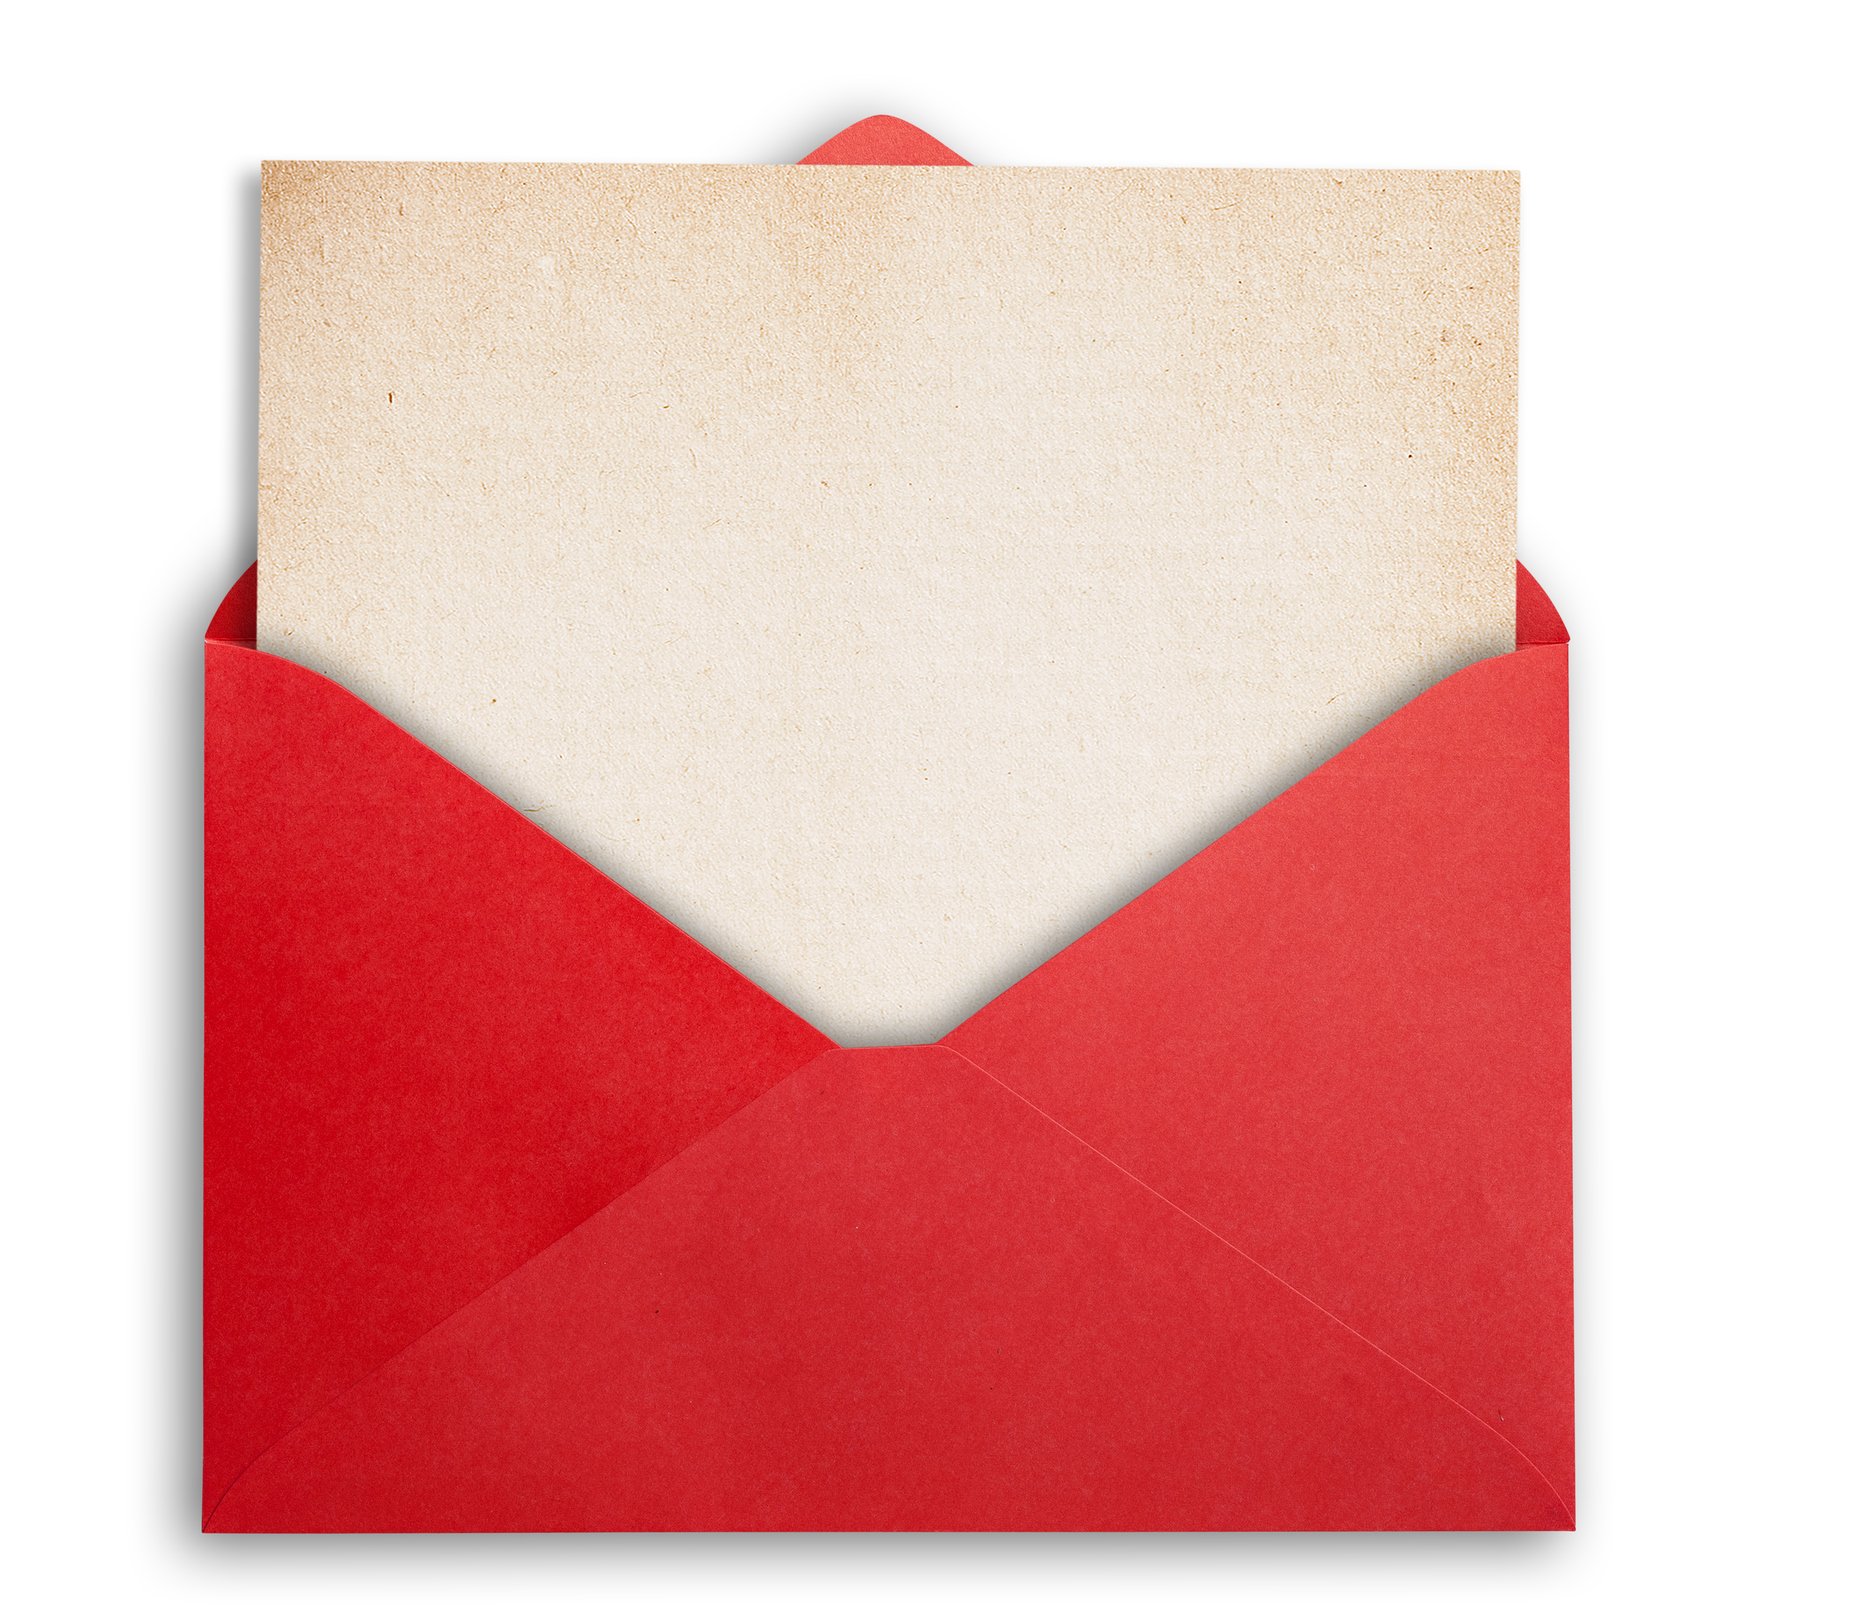 Надорванный конверт. Открытый конверт. Открывающийся конверт. Открытый красный конверт. Красный бумажный конверт.